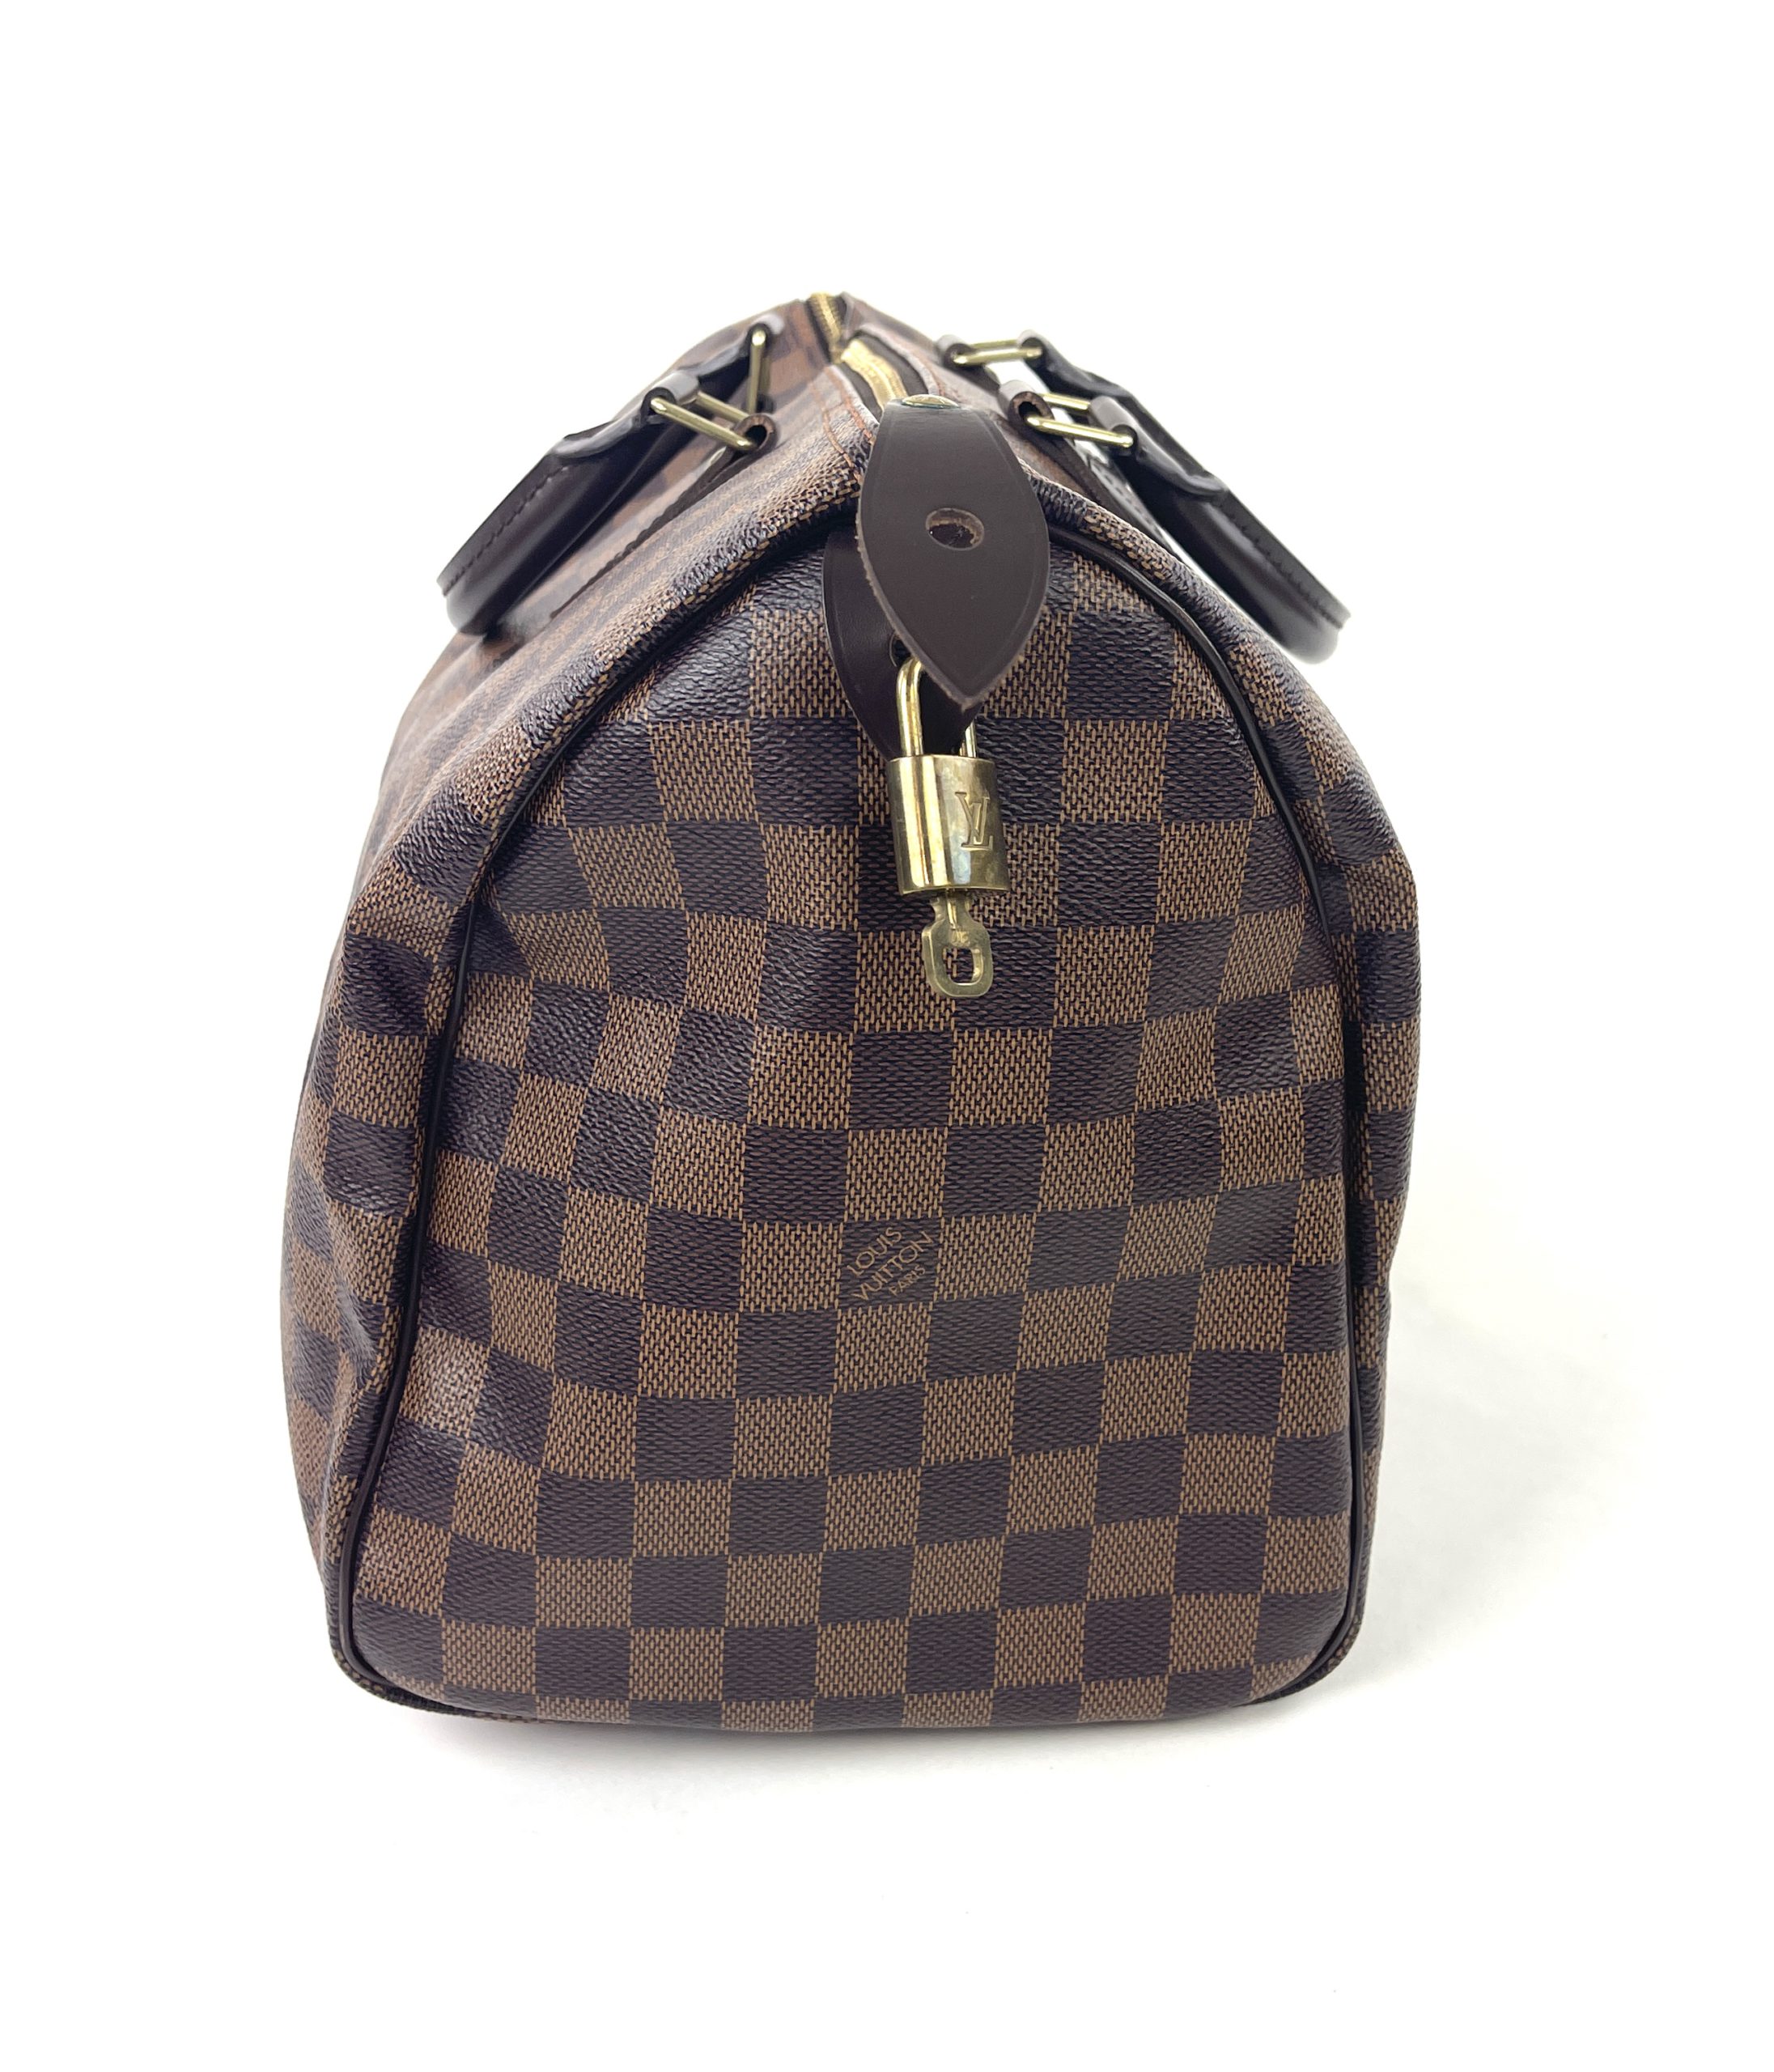 Louis Vuitton Speedy Bandouliere Bag Damier 35 - ShopStyle